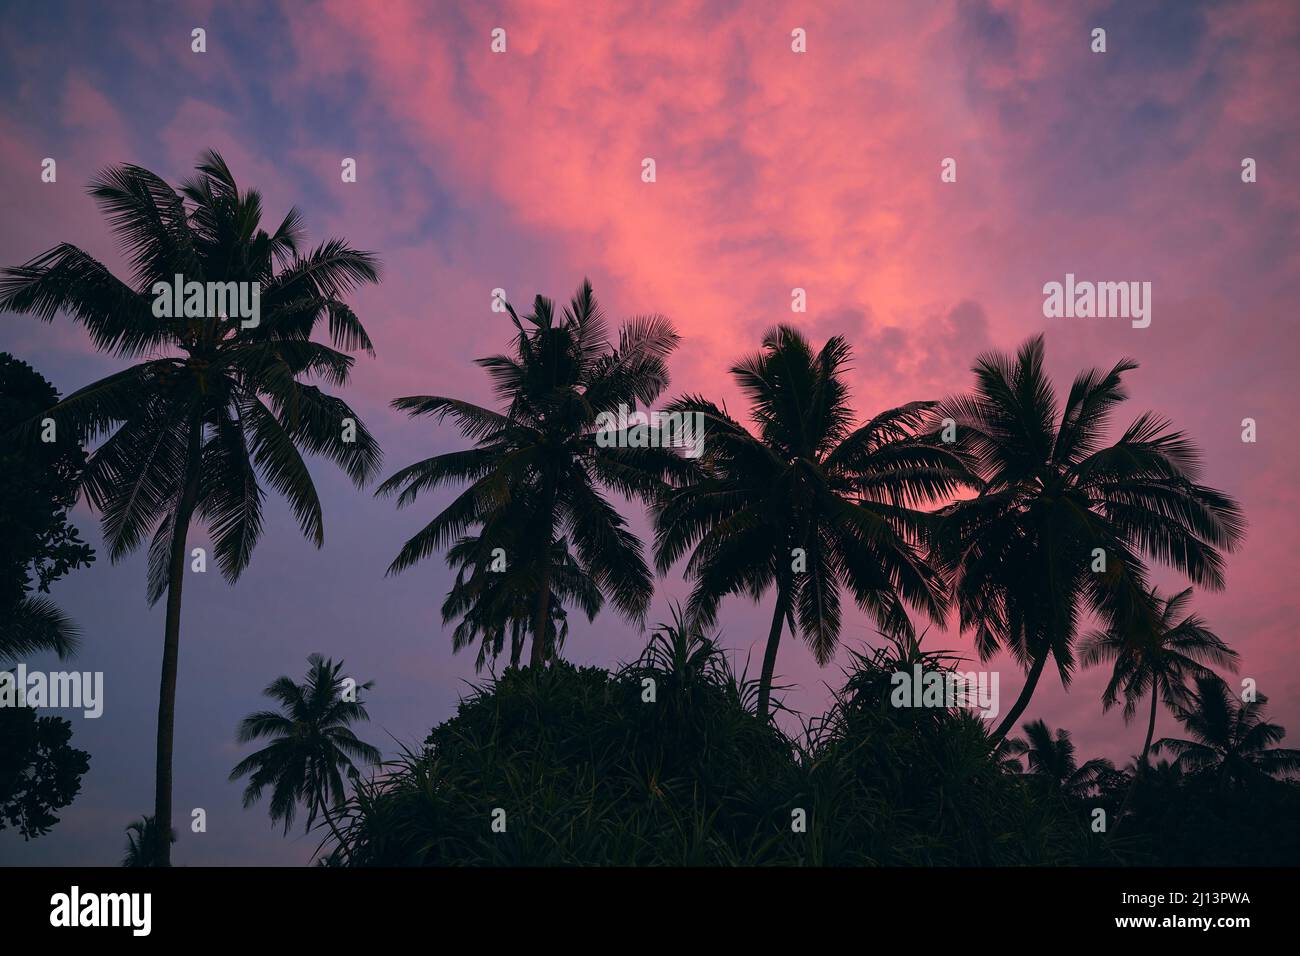 Siluetas de palmeras contra el cielo moody con nubes rojas al atardecer. Belleza en la naturaleza. Foto de stock